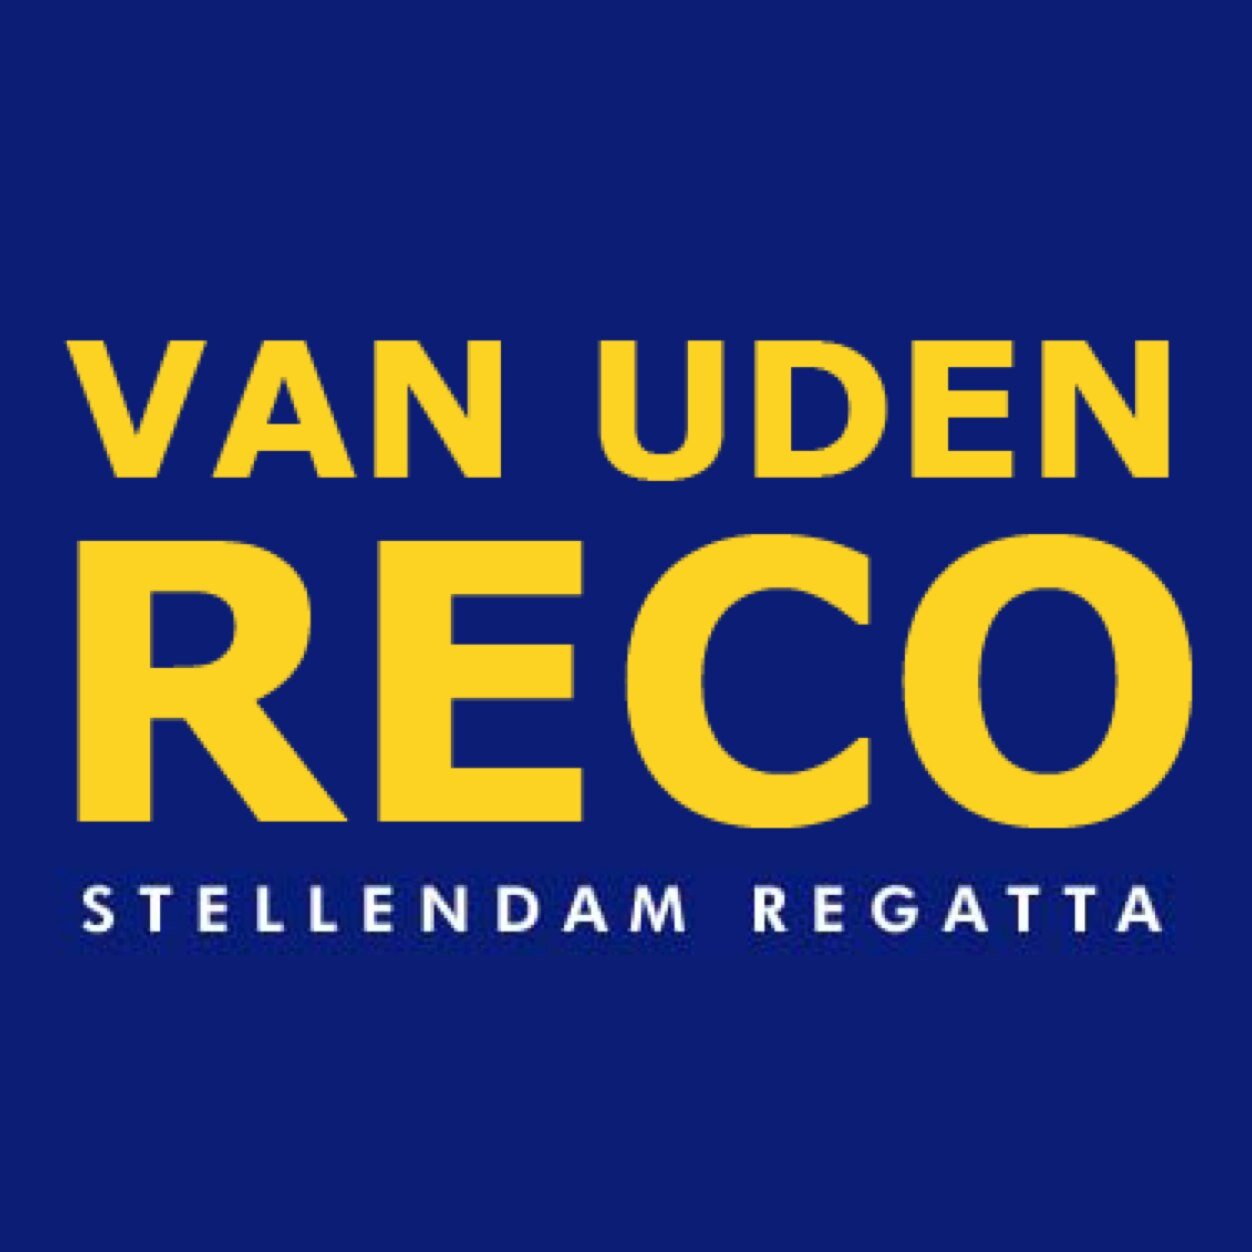 Van UDEN RECO Stellendam Regatta. Op 21 en 22 april 2018. voor kajuitjachten ORC, IRC, eenheidsklassen, sportboten en boten zonder meetbrief. #VUR18